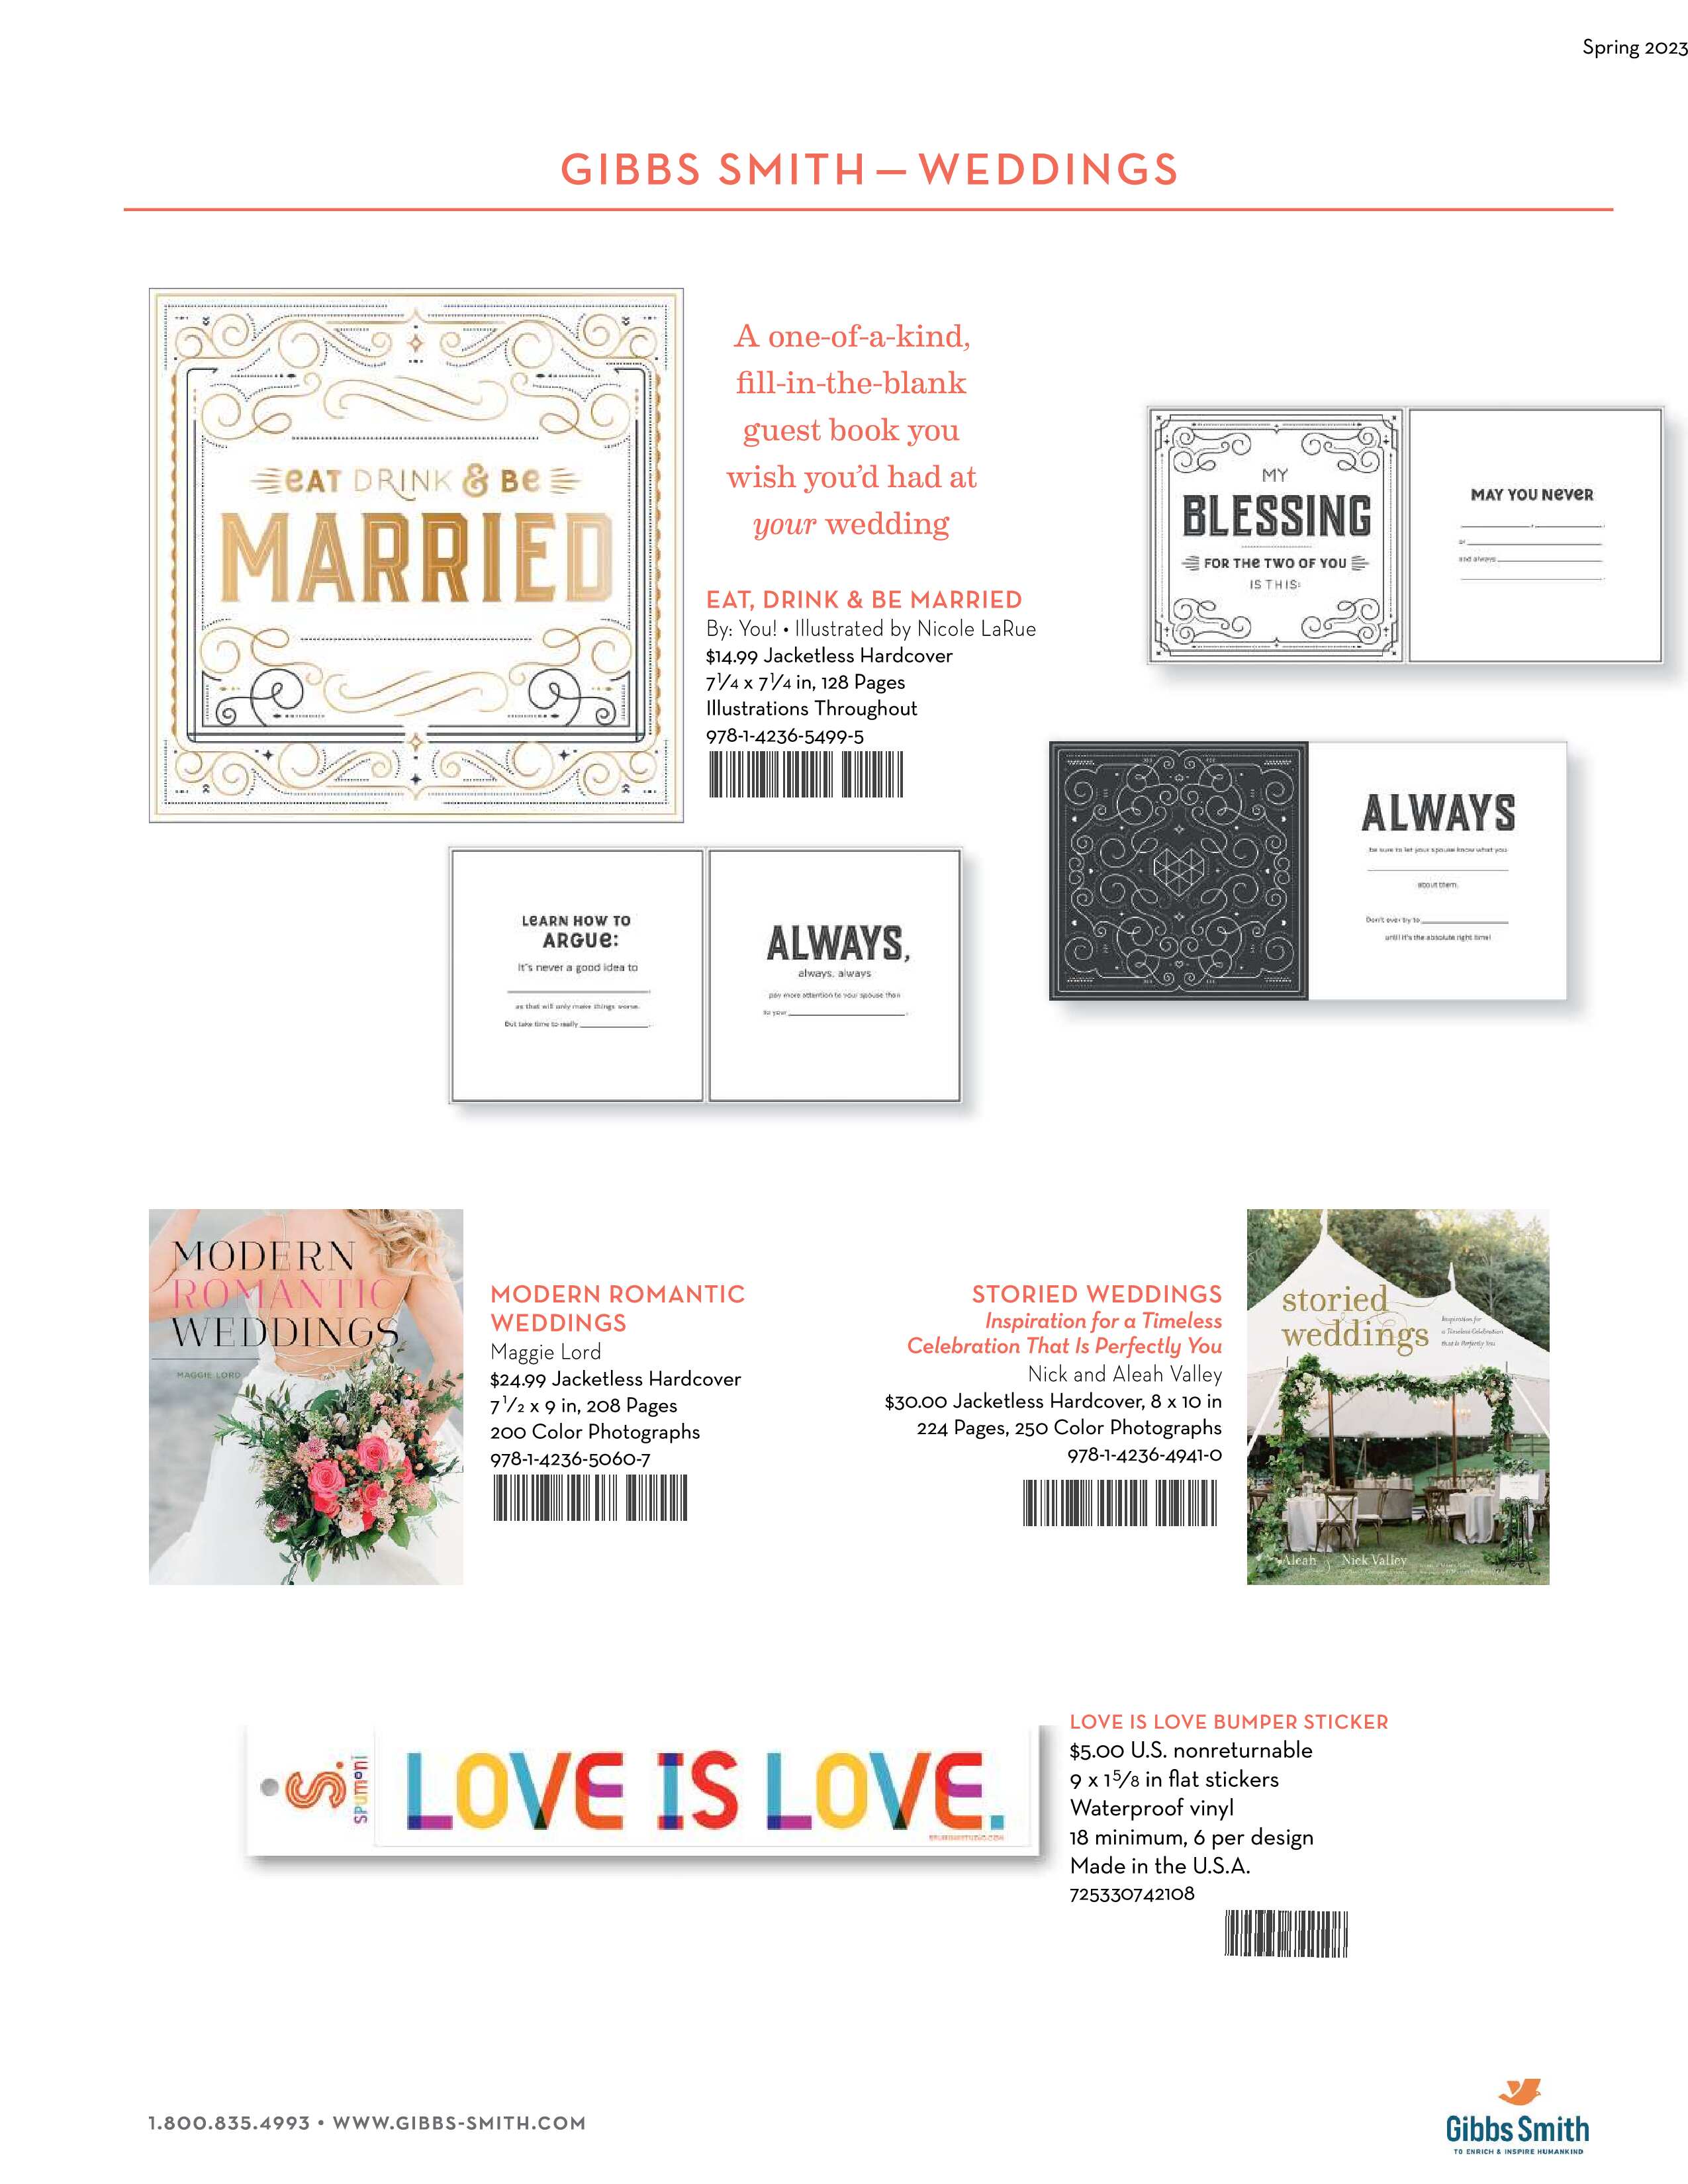 Wedding Sales Sheet